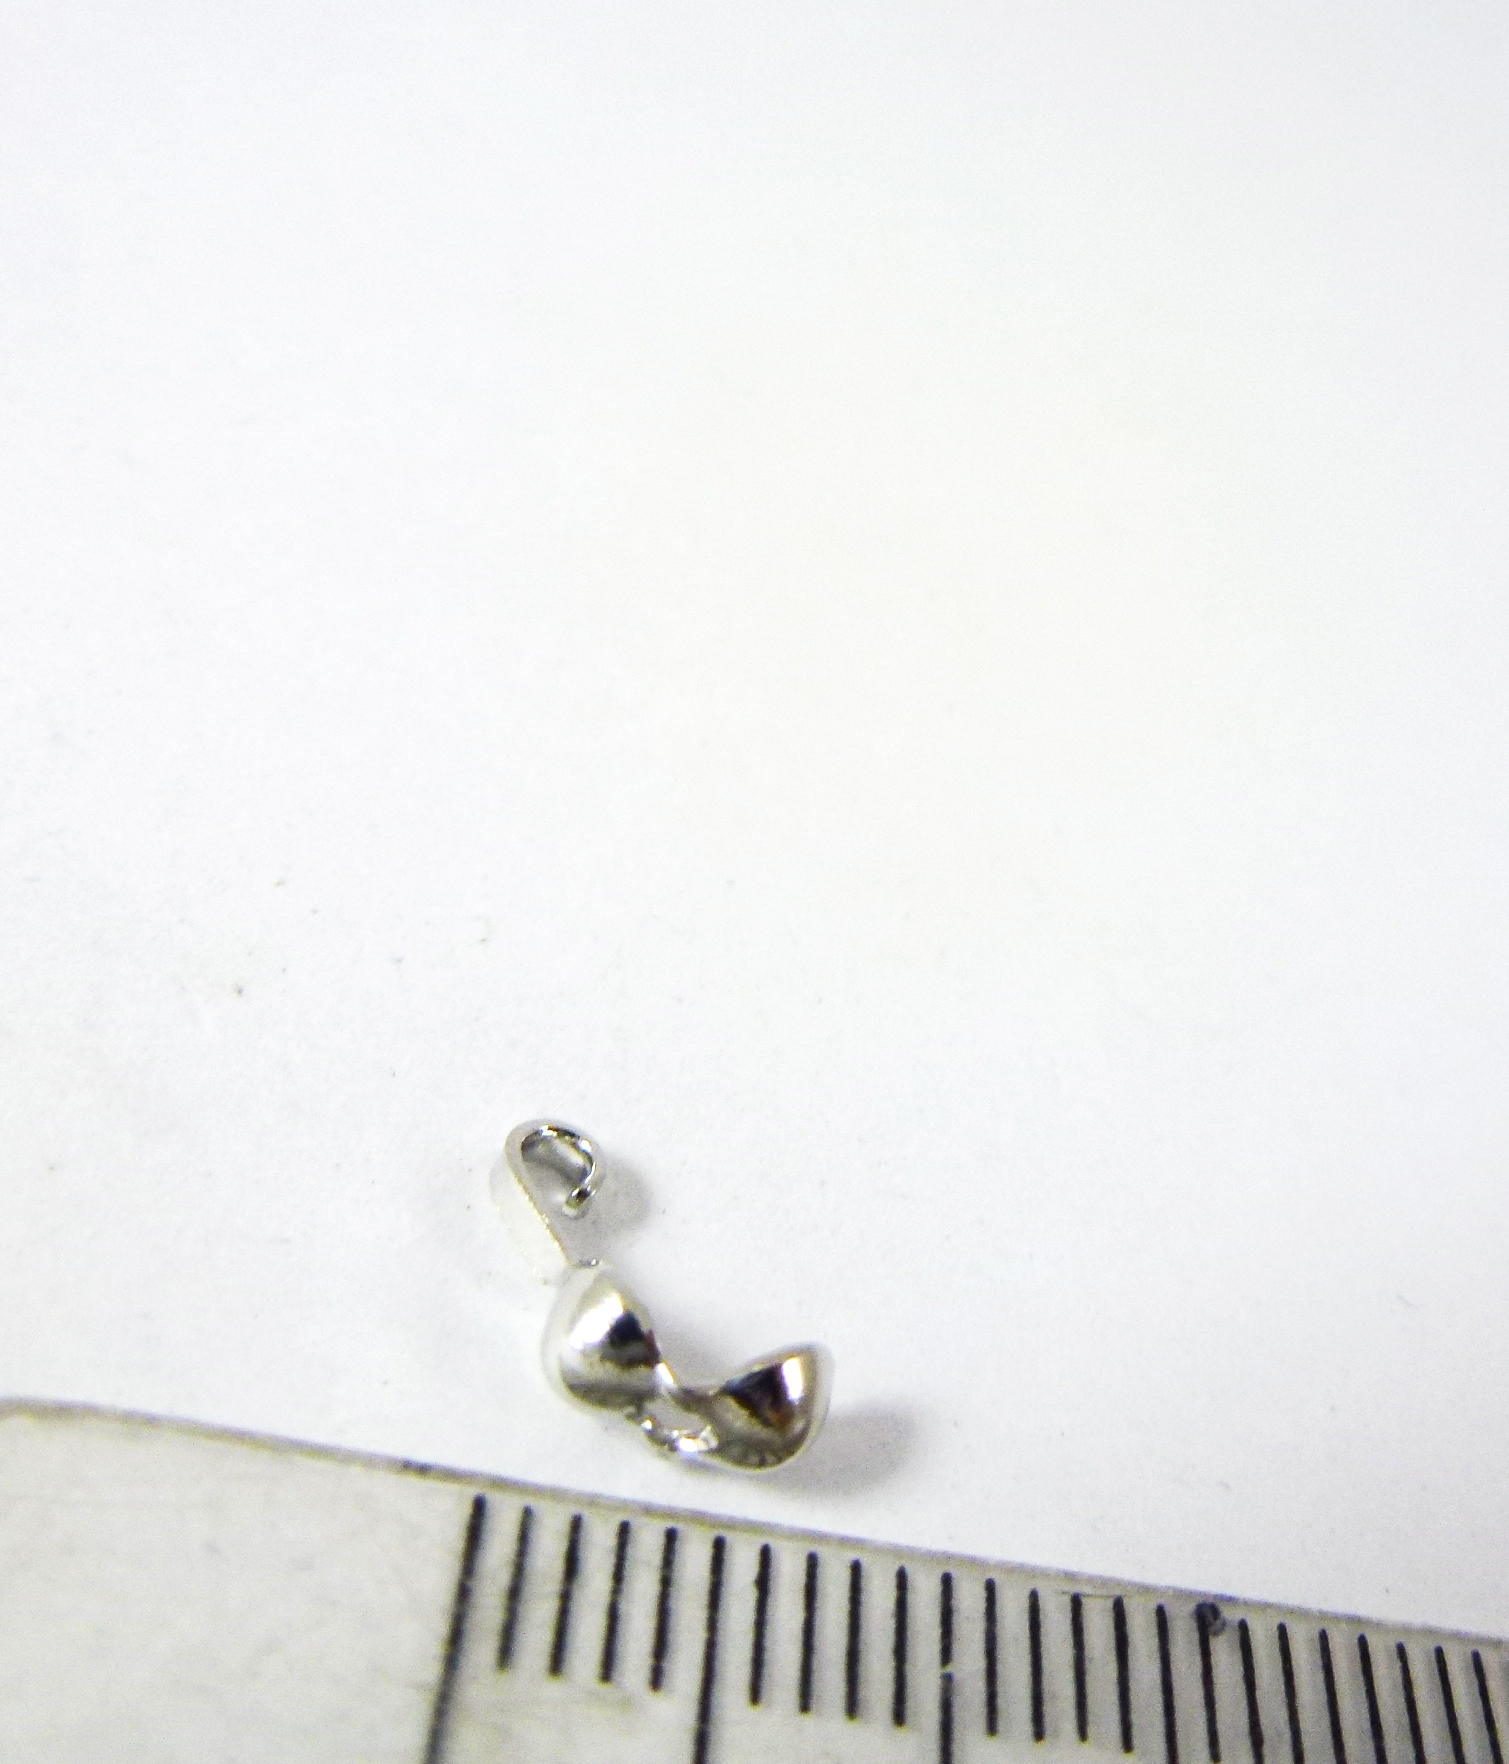 2.5mm銅鍍白K長腳螞蟻